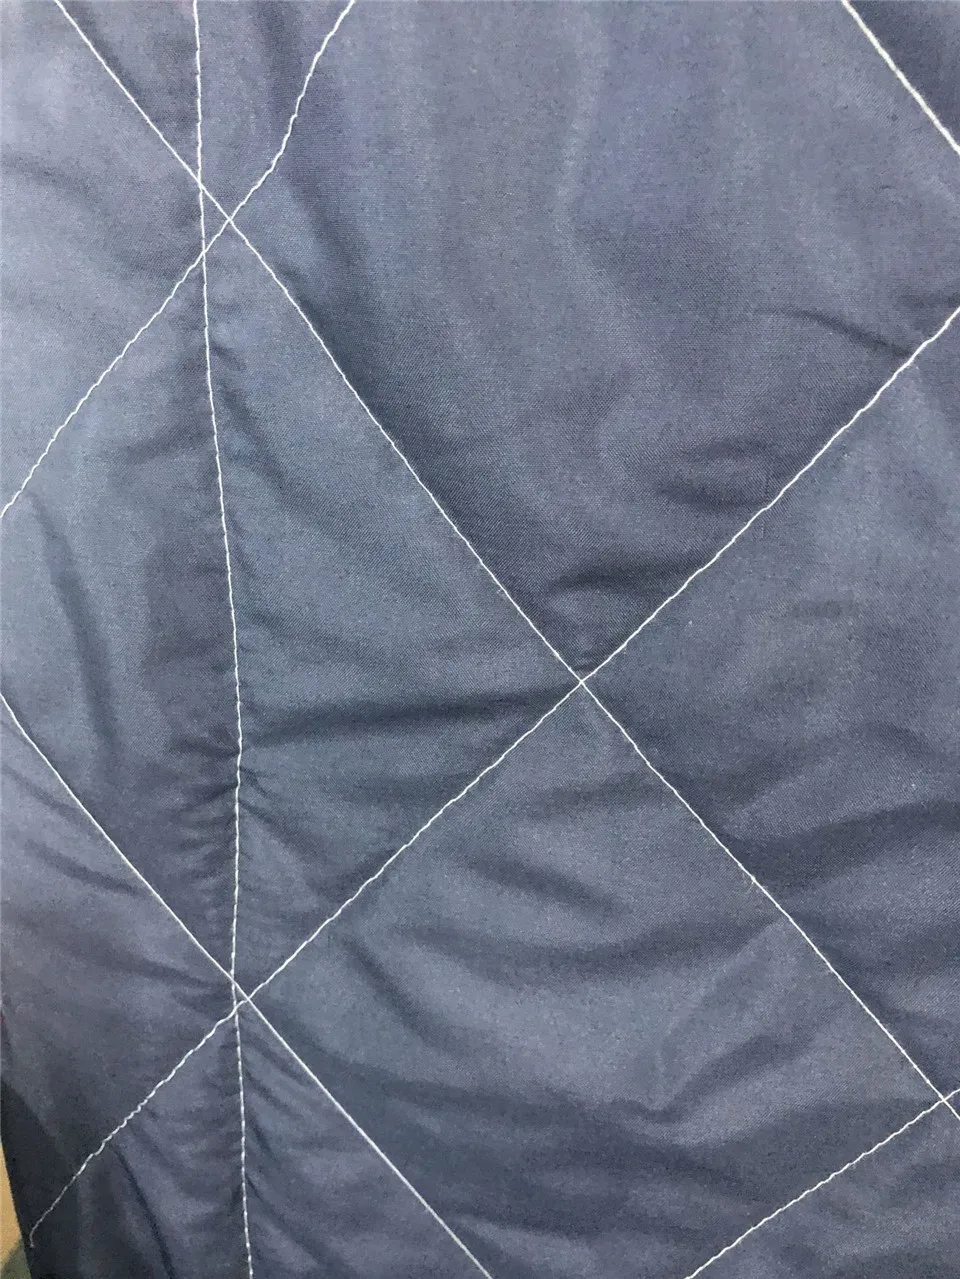 SOFTBATFY Подсолнух печати все сезонное одеяло для детей взрослых кровать мягкое теплое одеяло Стёганое одеяло Прямая поставка